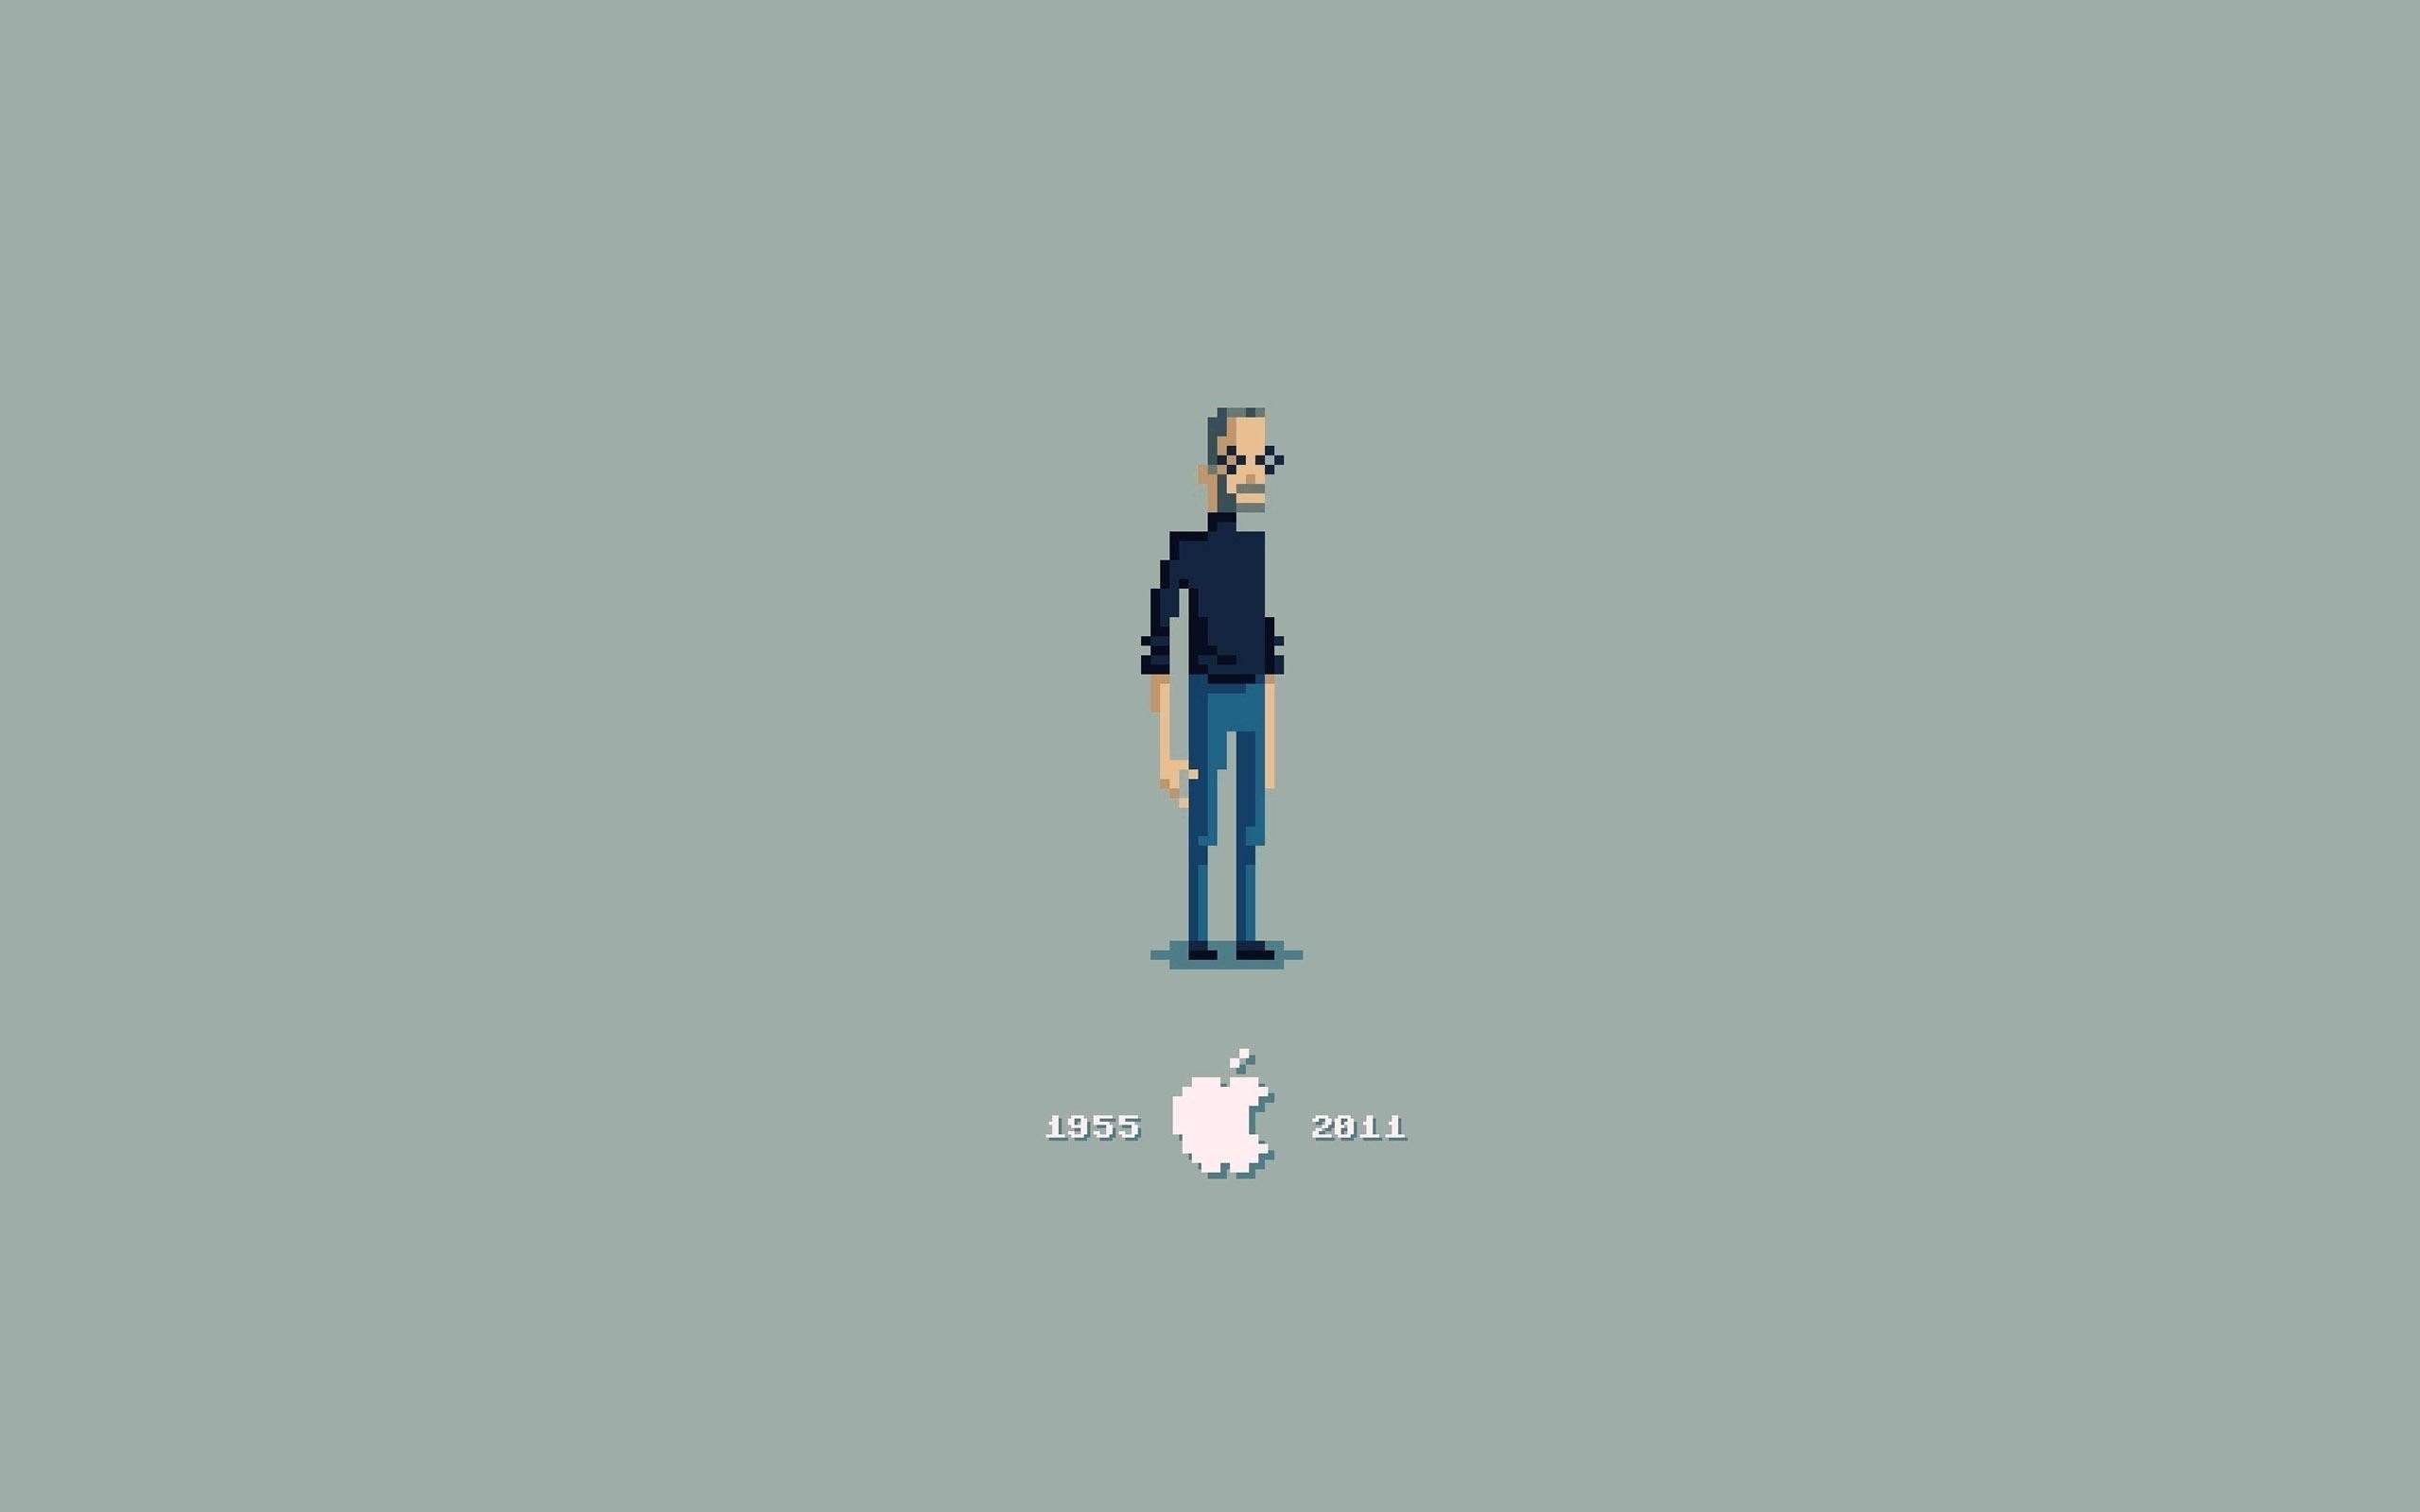 Steve Jobs Blue Face Art Wallpapers